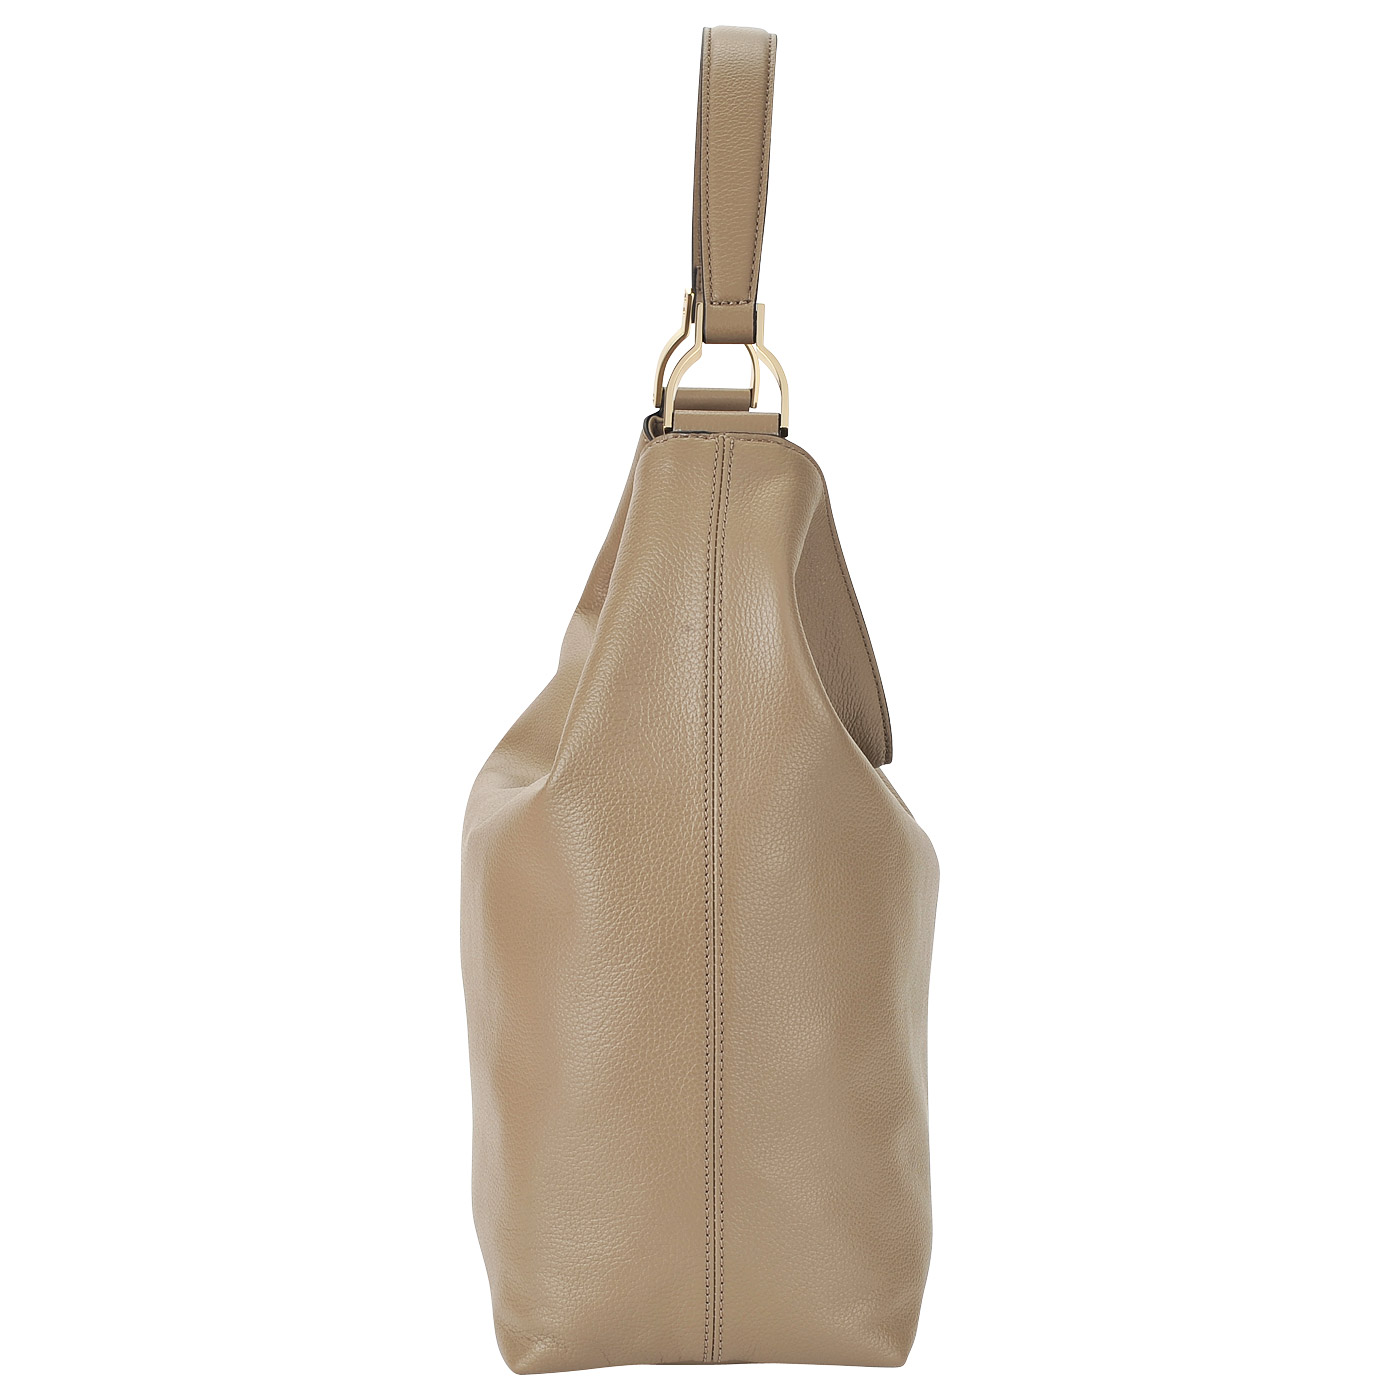 Вместительная кожаная сумка с плечевым ремешком Coccinelle Keyla